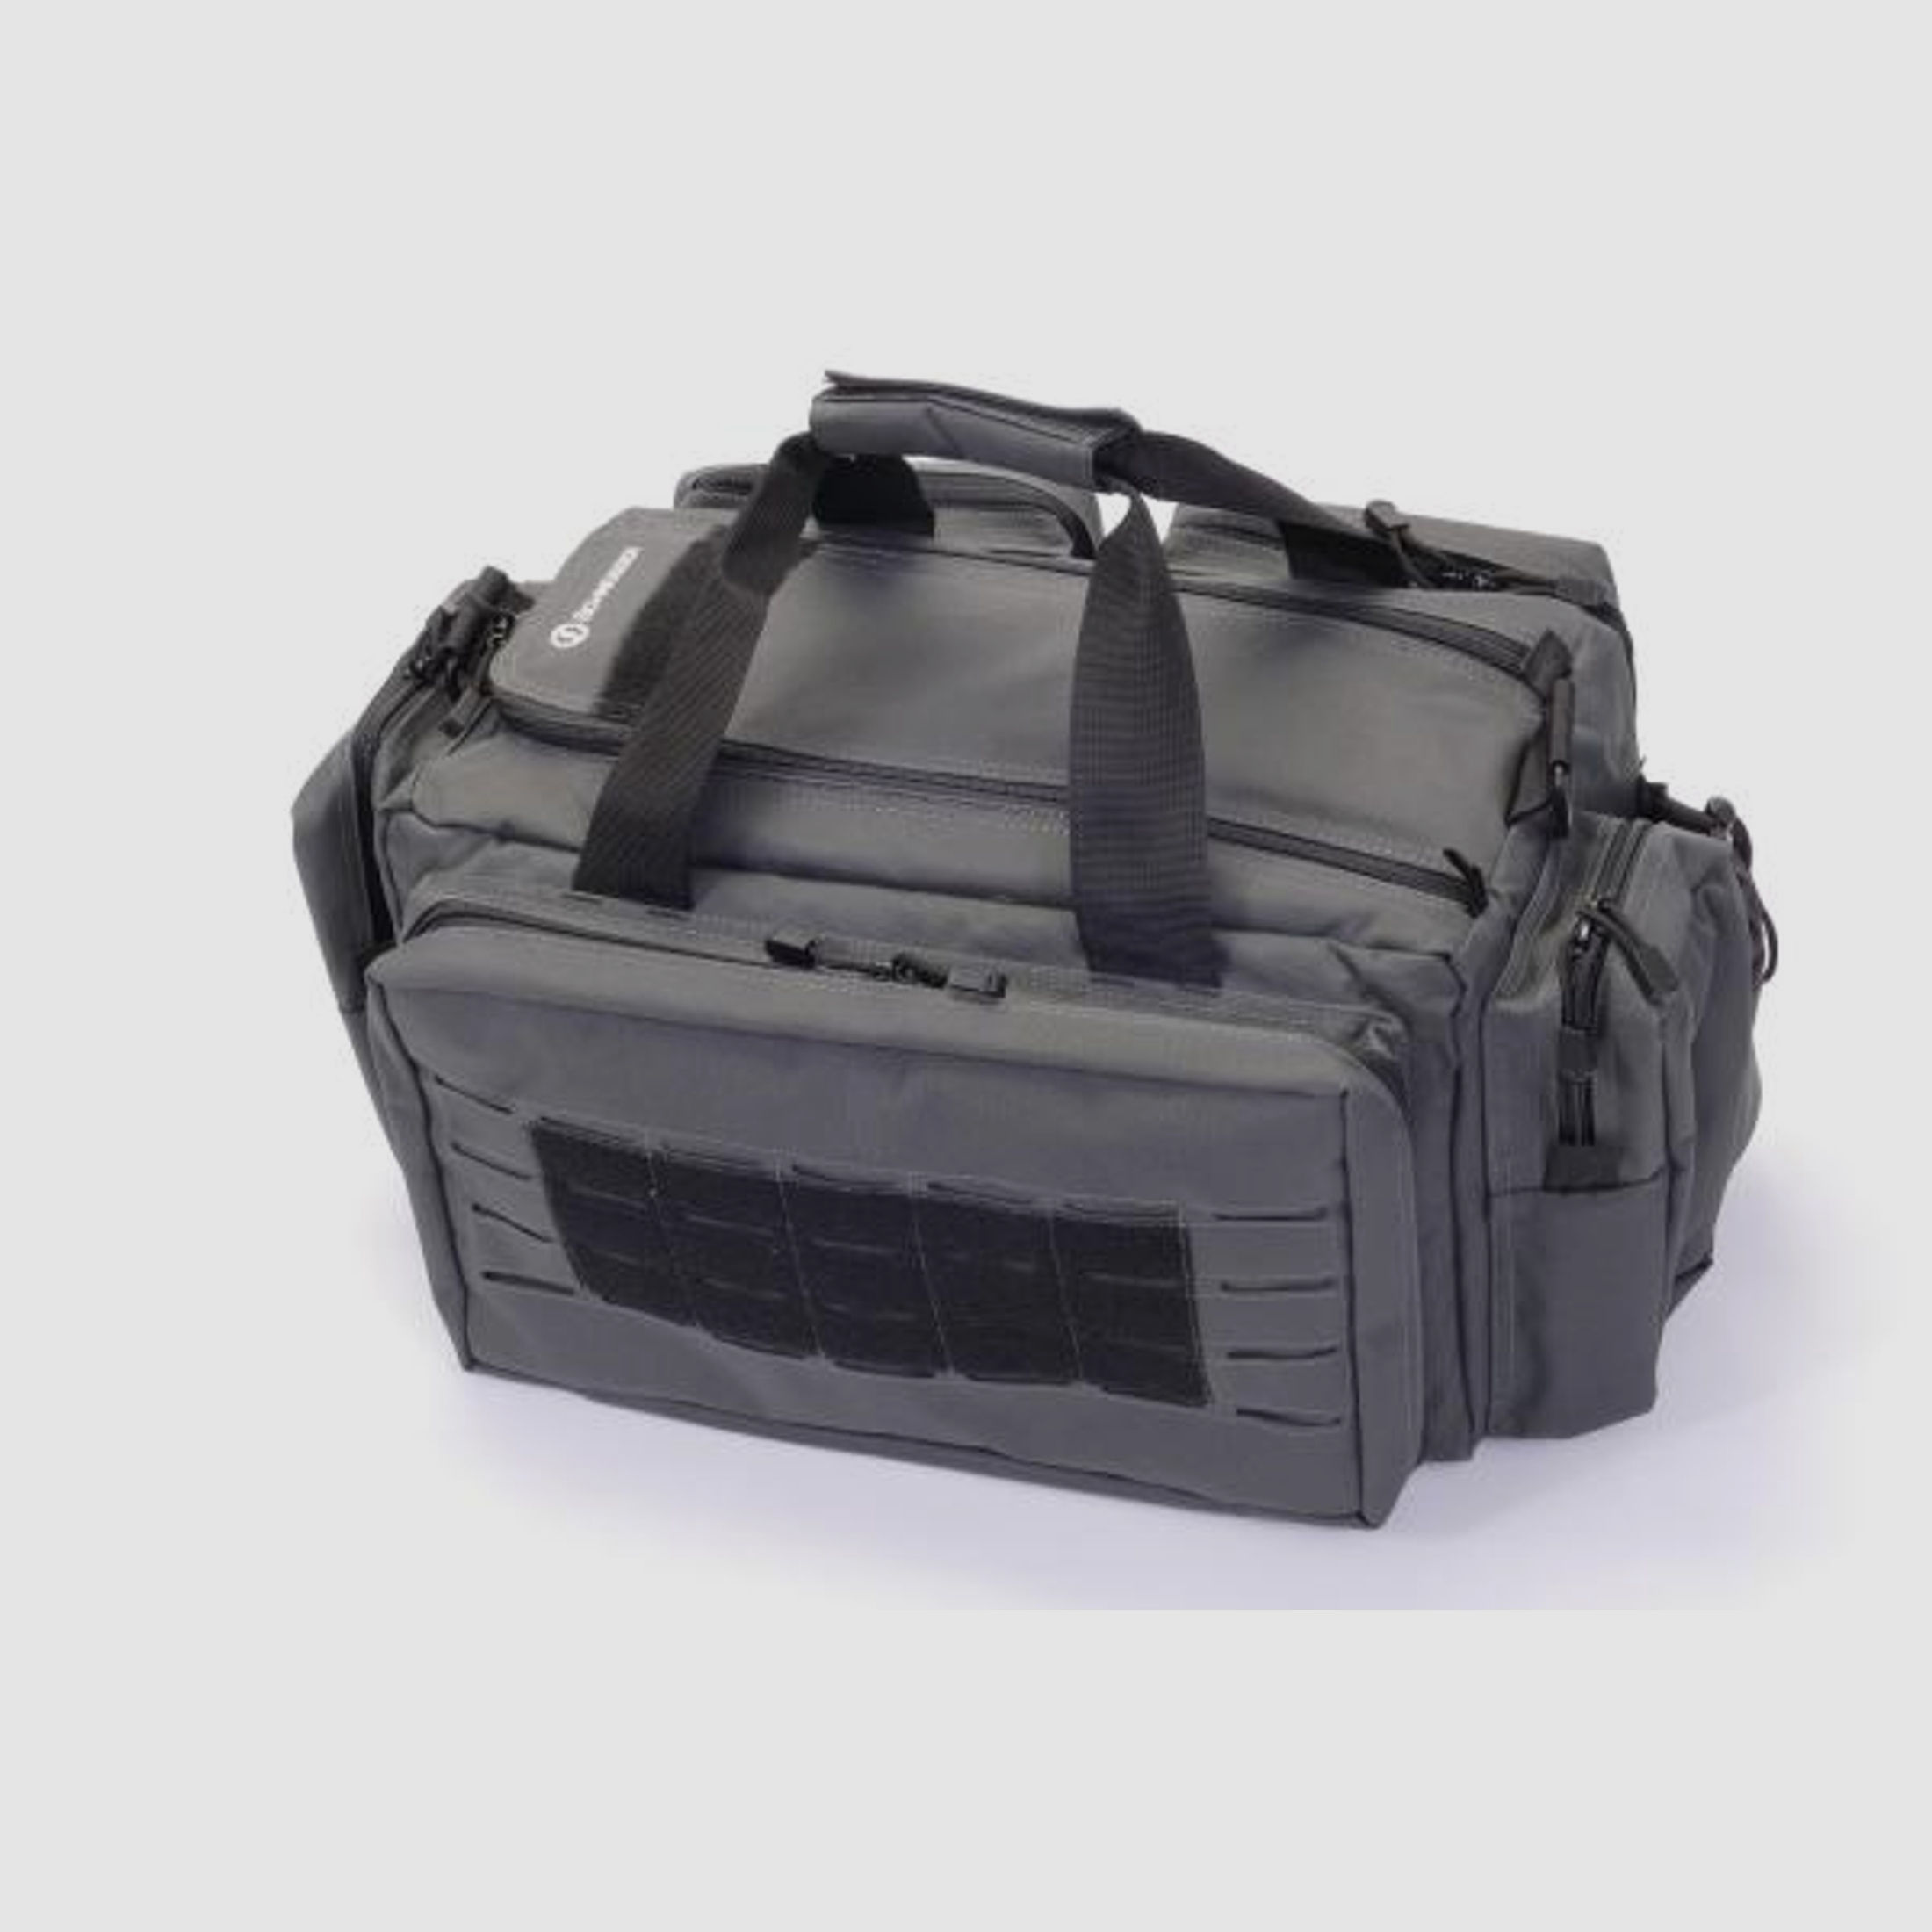 SCHMEISSER Schießsporttasche Range Bag Pistolentasche 61x41x25,4cm  grün-grau